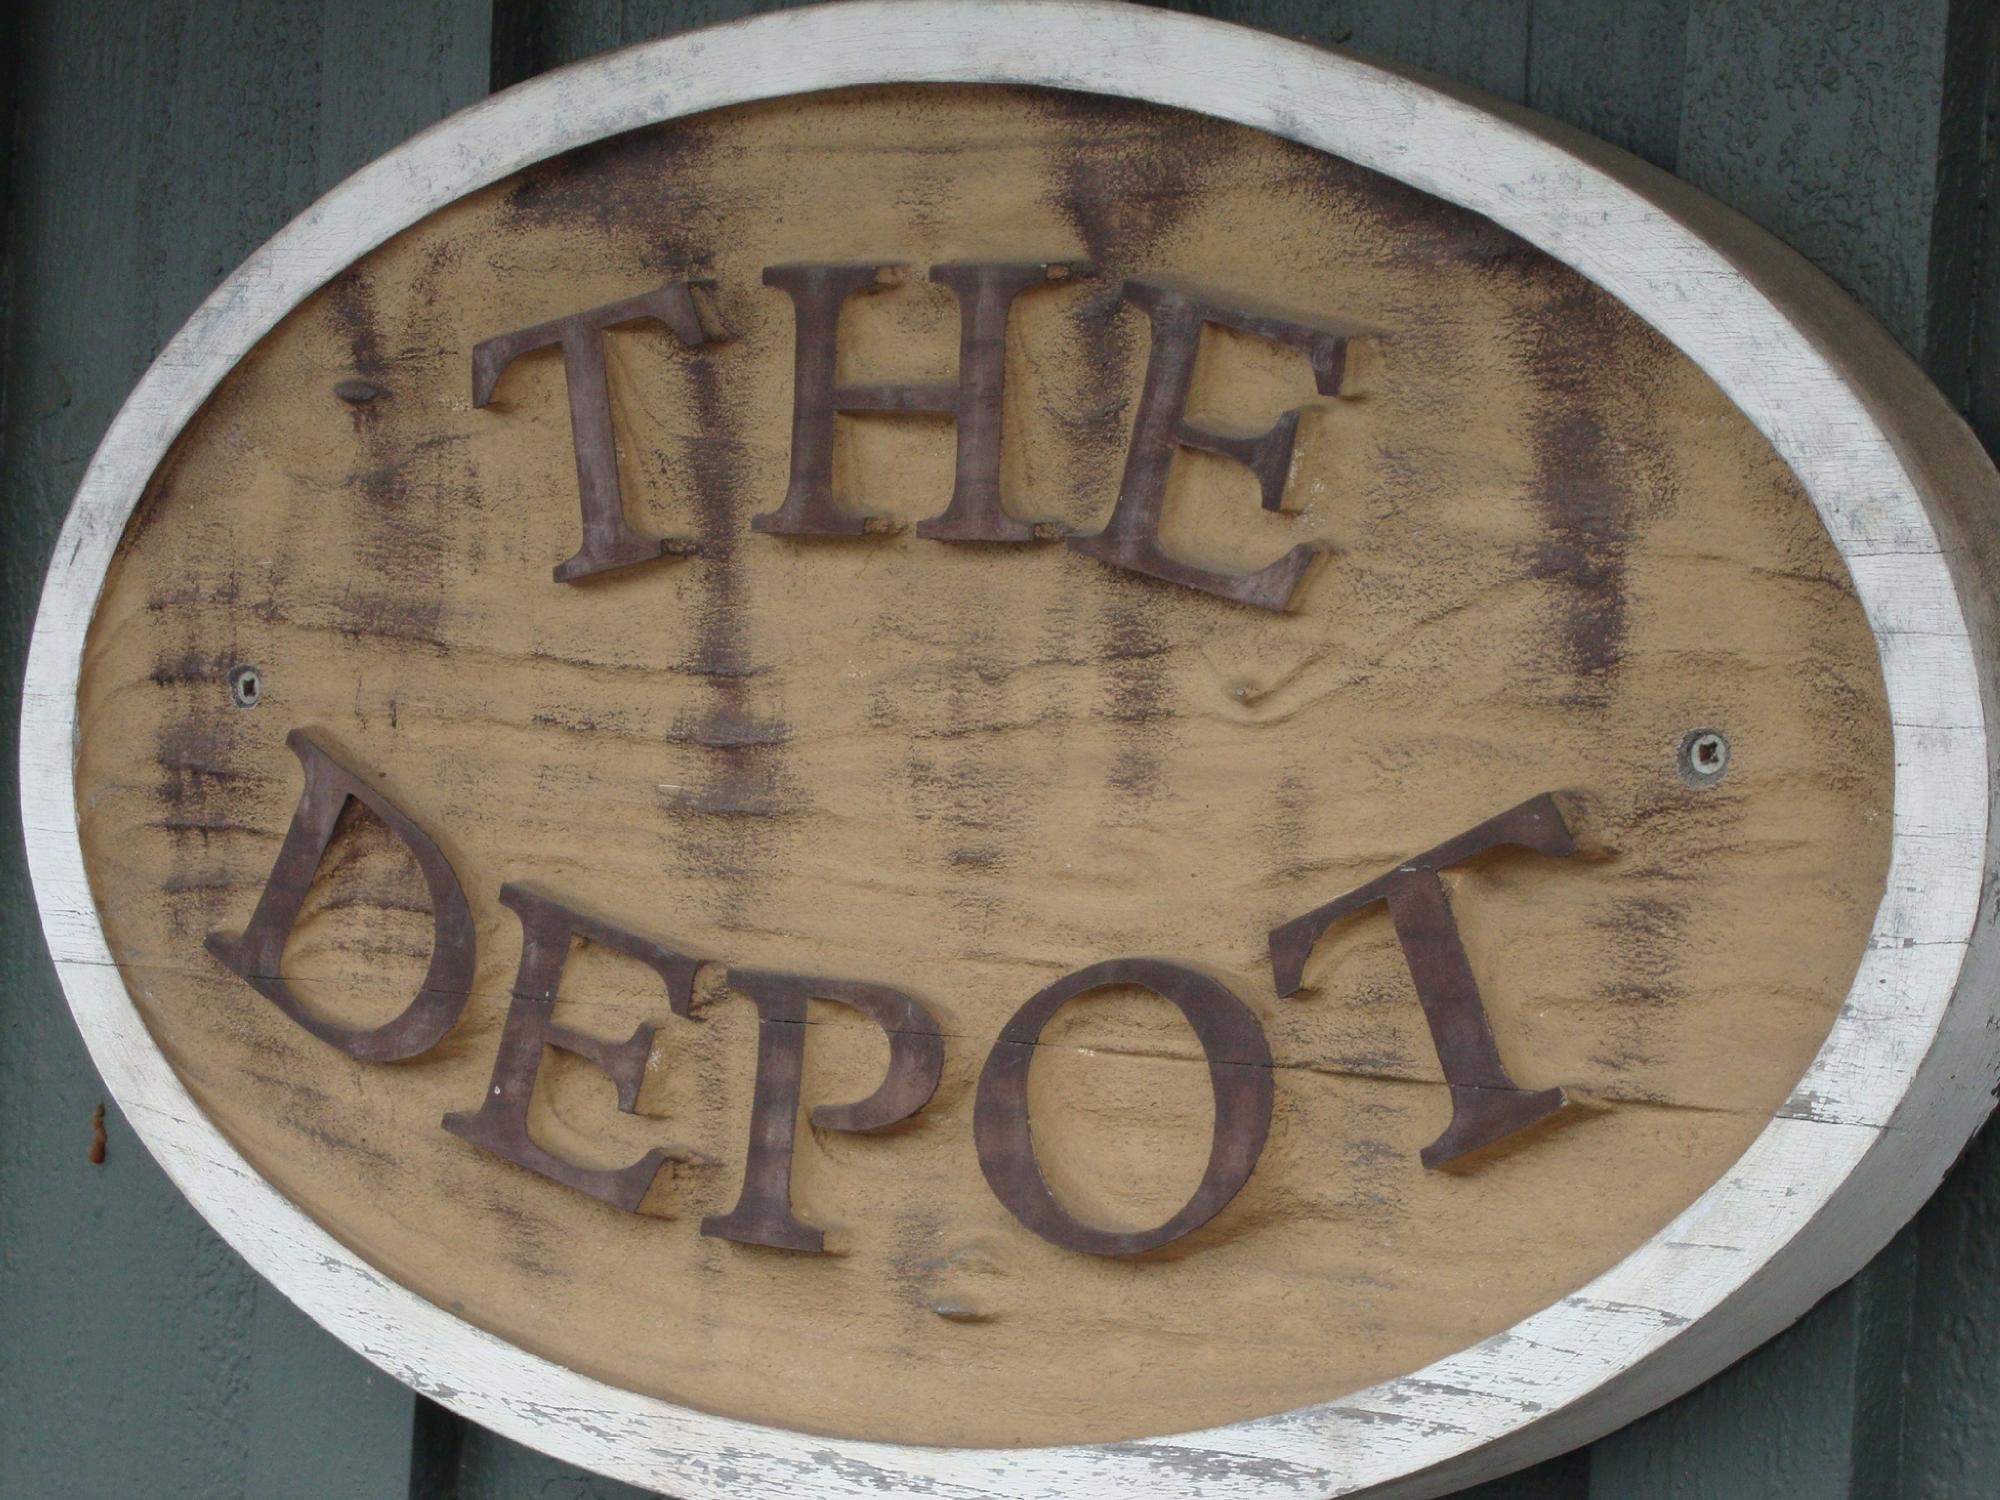 Depot Deli & Grill